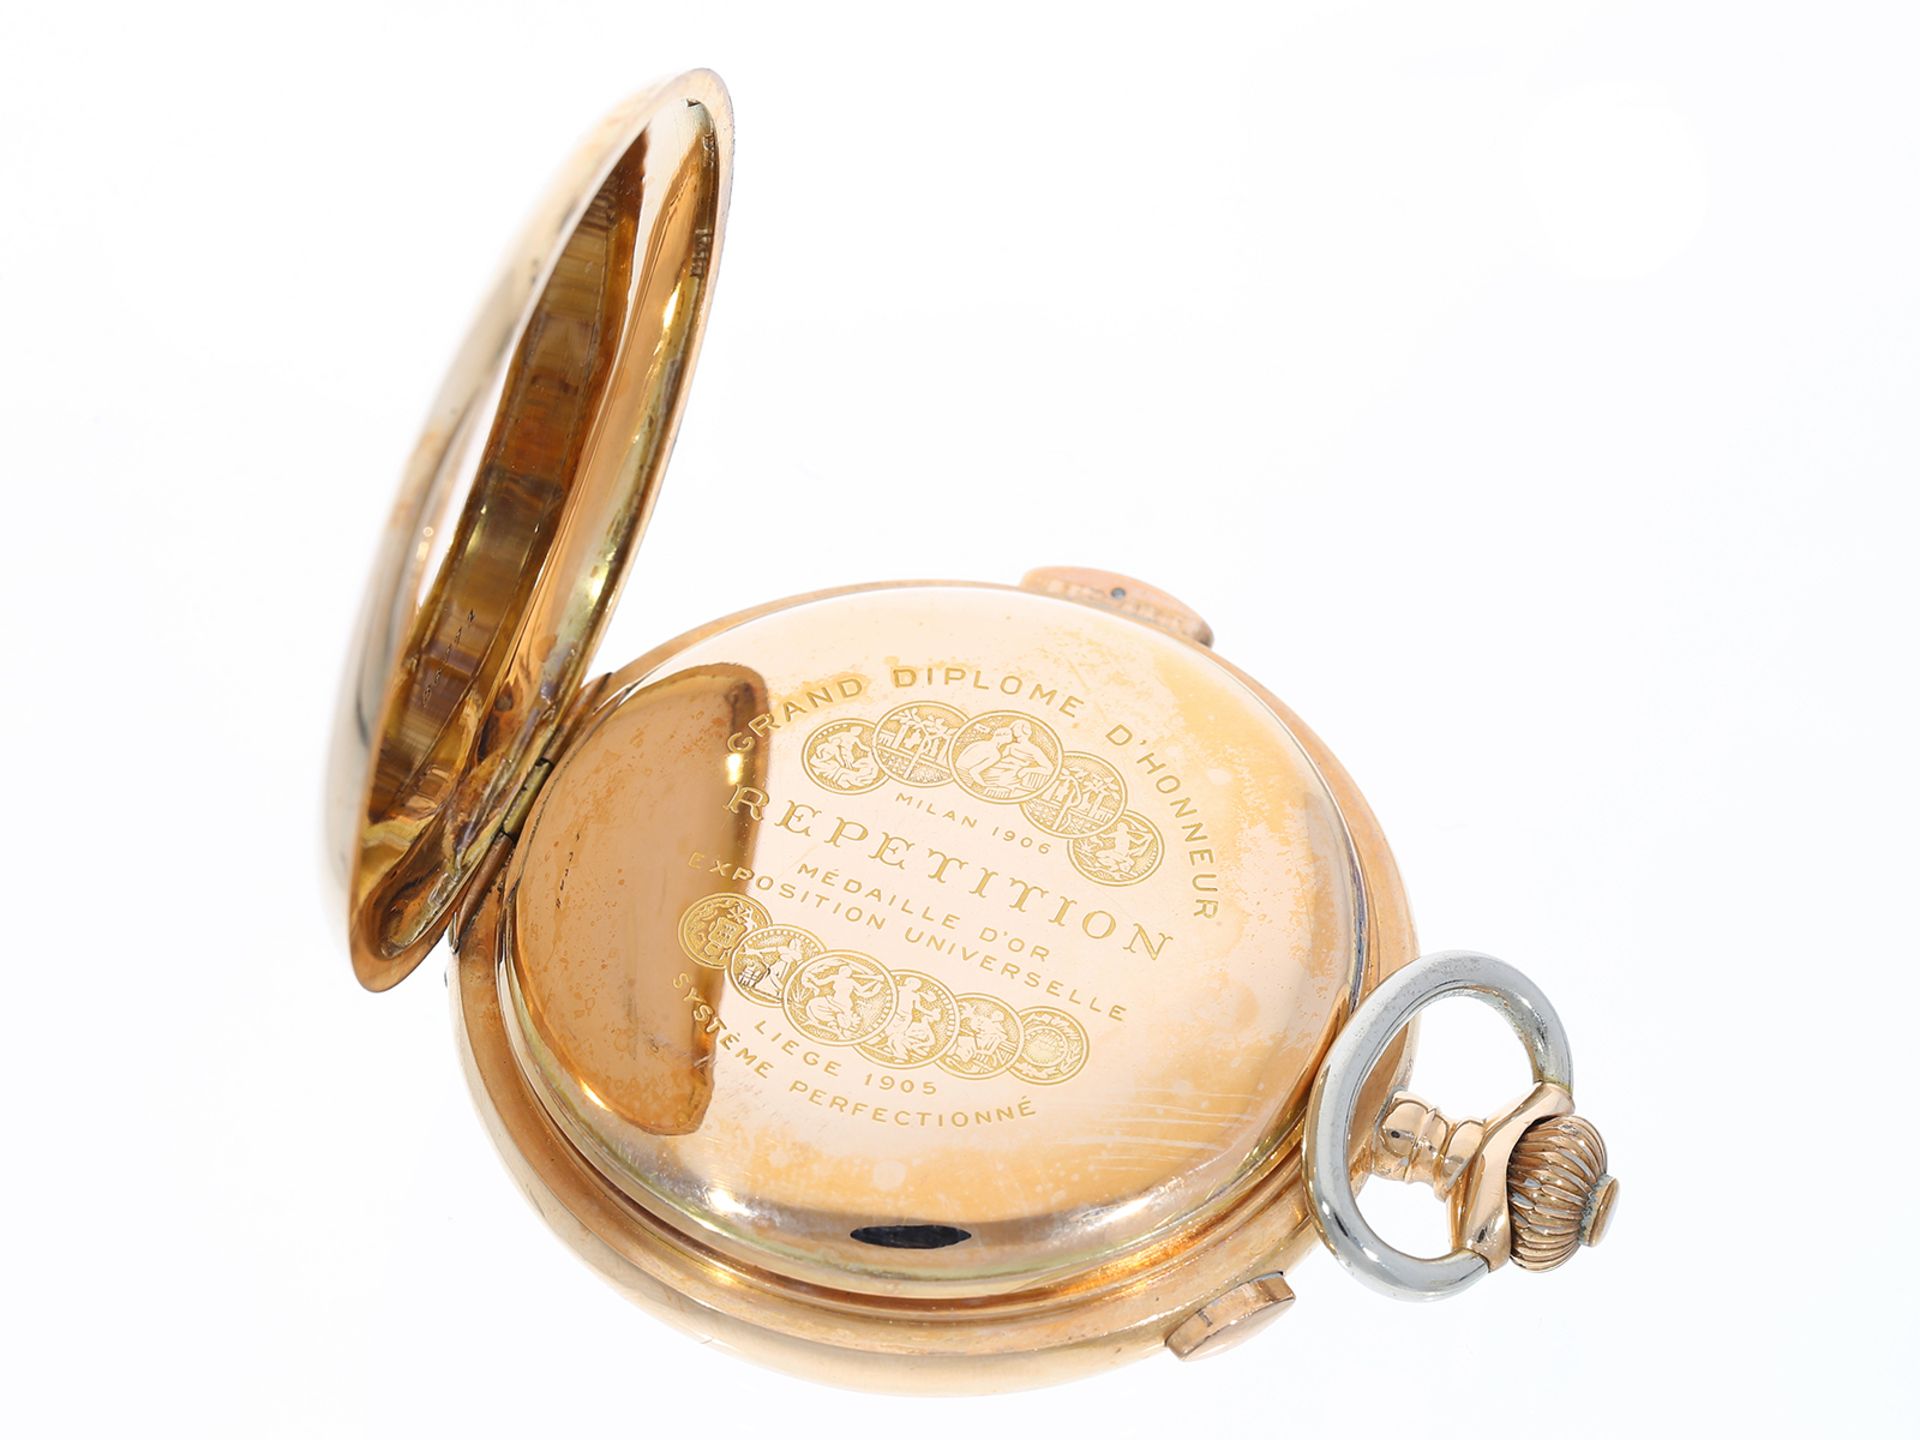 Taschenuhr: schwere, große Savonnette mit Repetition und Chronograph, mit Goldkette - Image 3 of 7